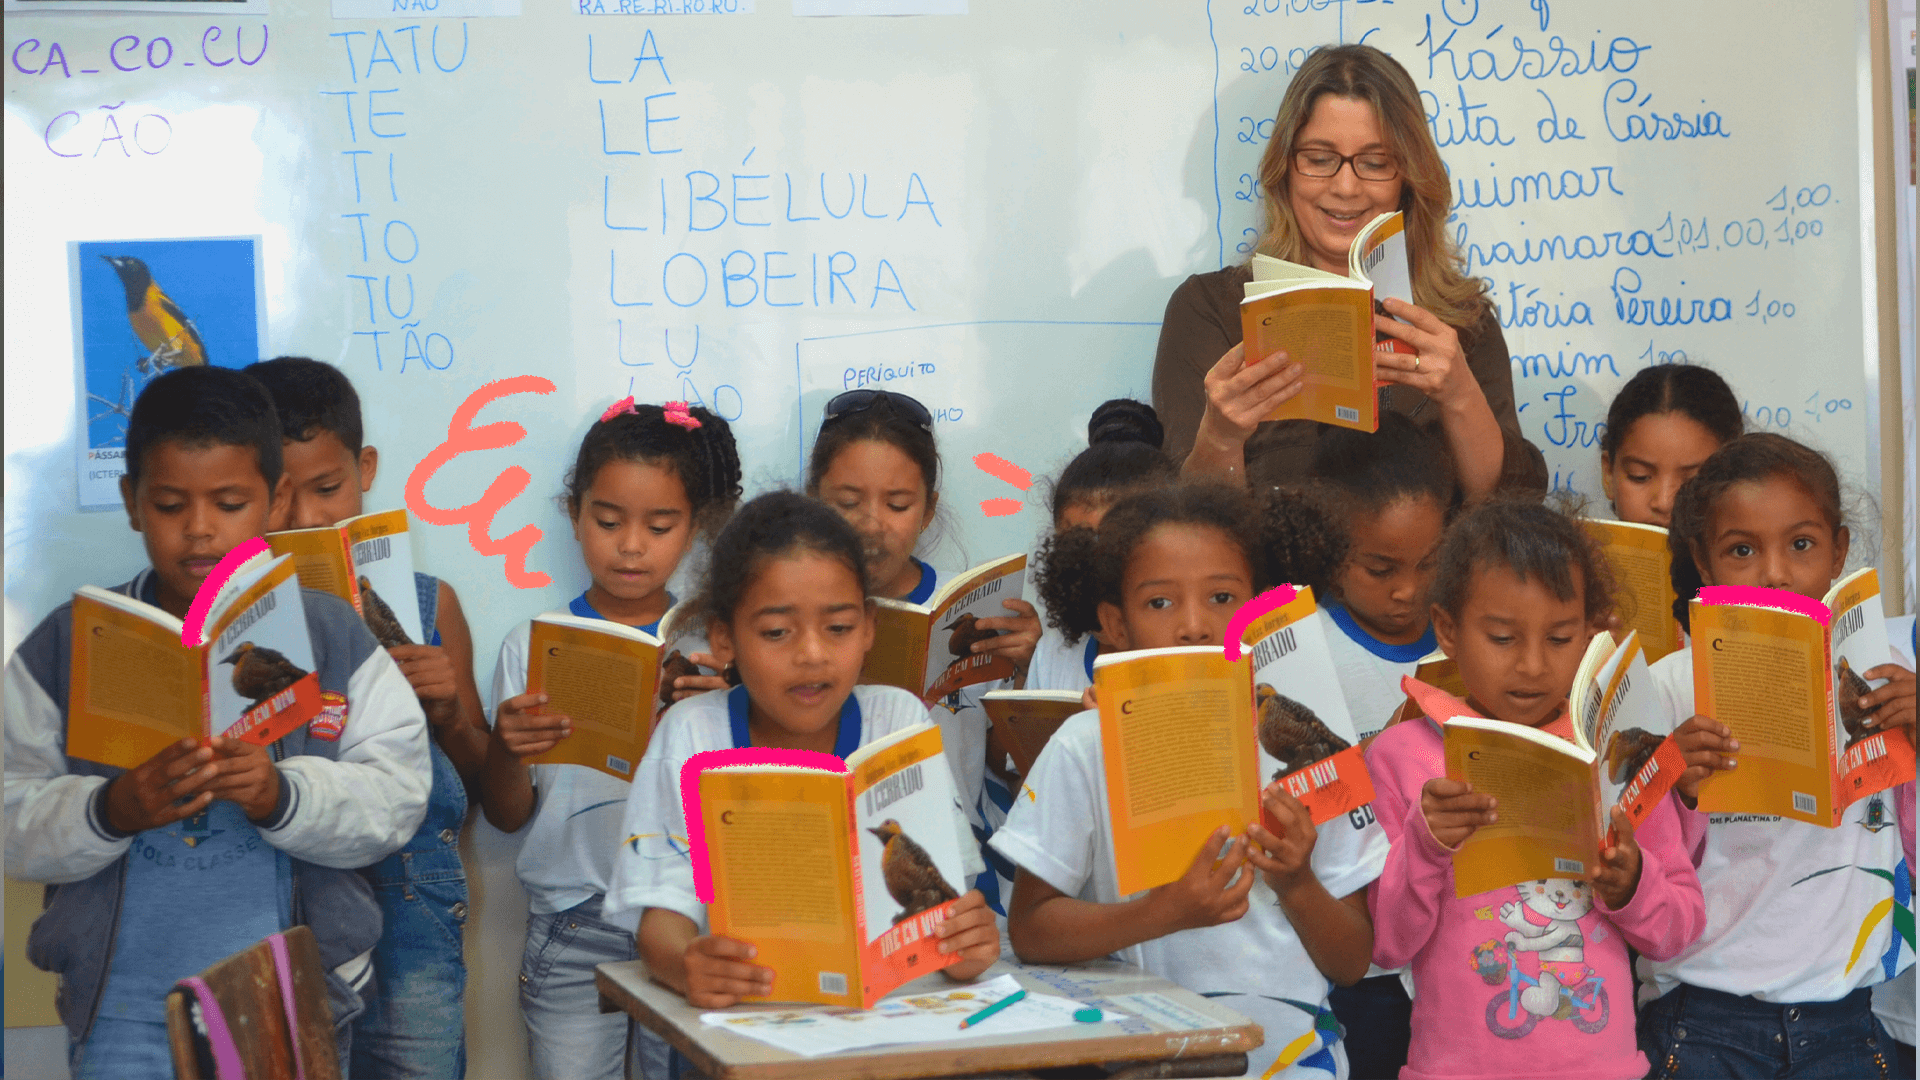 imagem da matéria sobre os desafios para a educação brasileira mostra um grupo de ciranças vestidas de uniforme, em uma sala de aula, lendo livros.